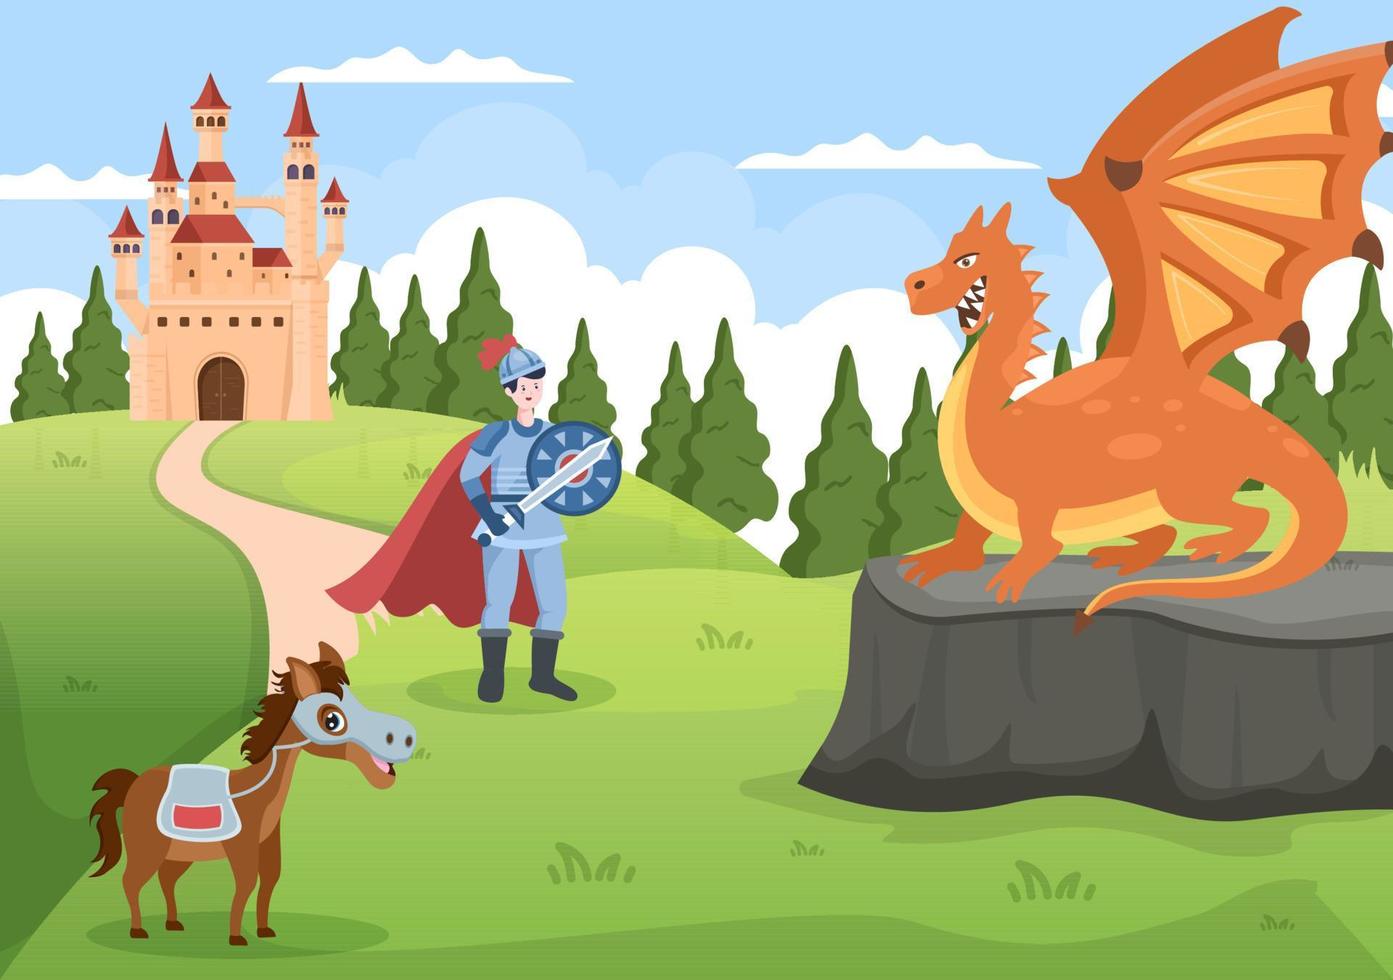 kasteel met prins, koningin en ridder elementencollectie, majestueuze paleisarchitectuur in cartoon vlakke stijlillustratie vector